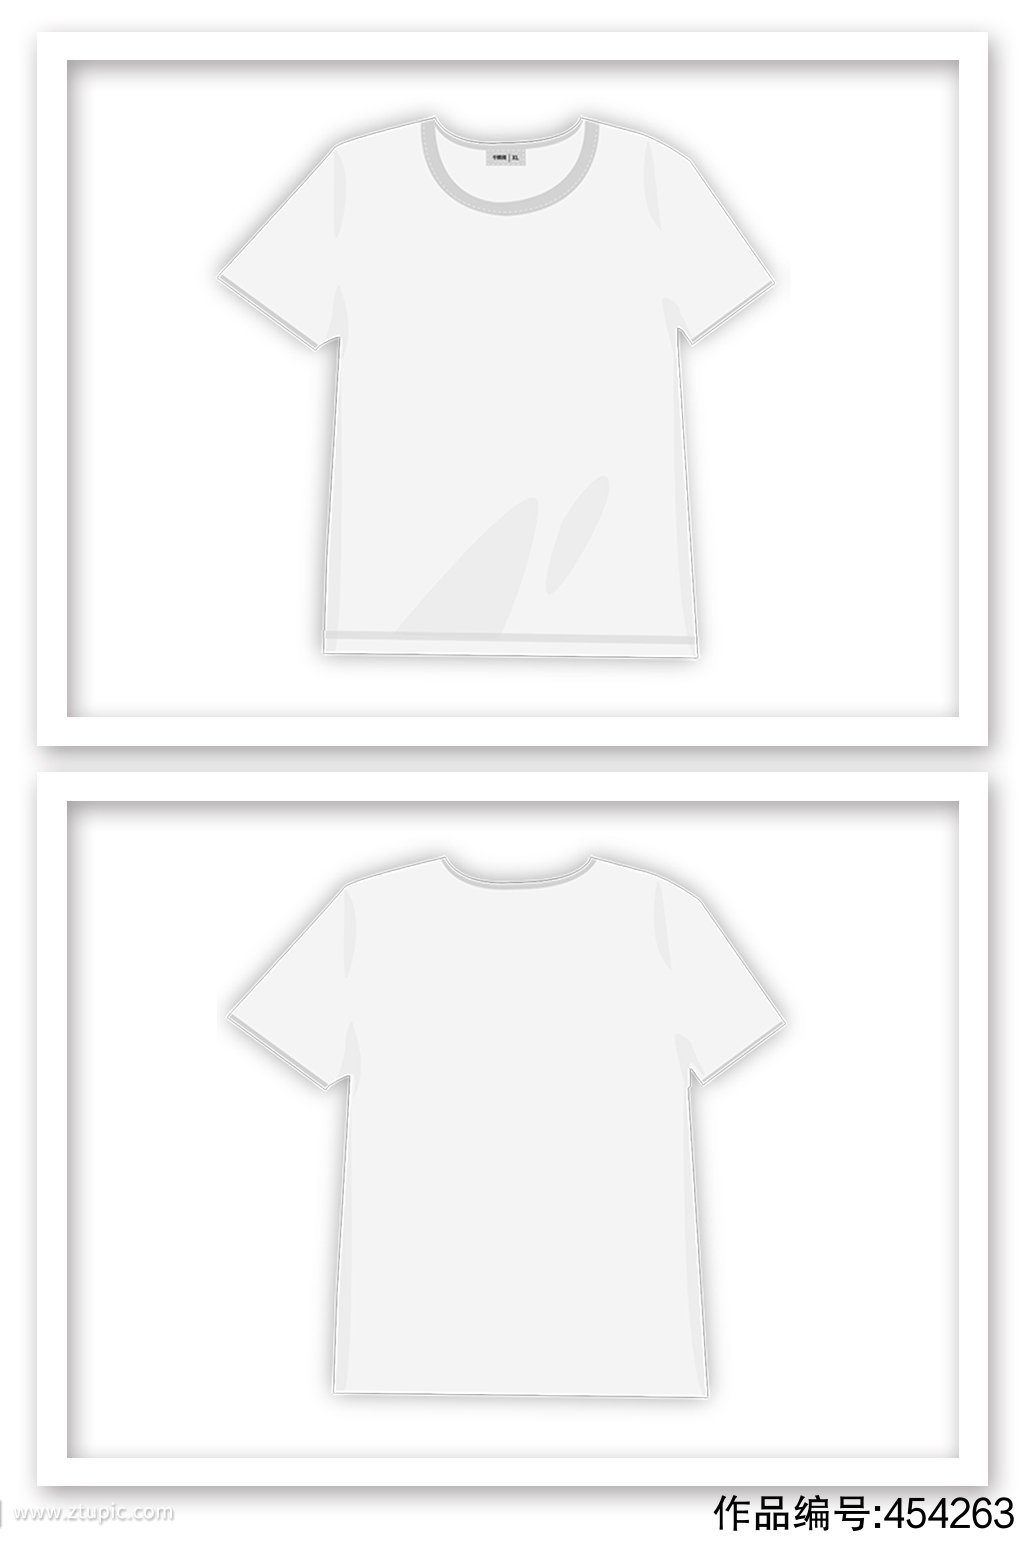 白色短袖t恤矢量元素模板下载-编号454263-众图网